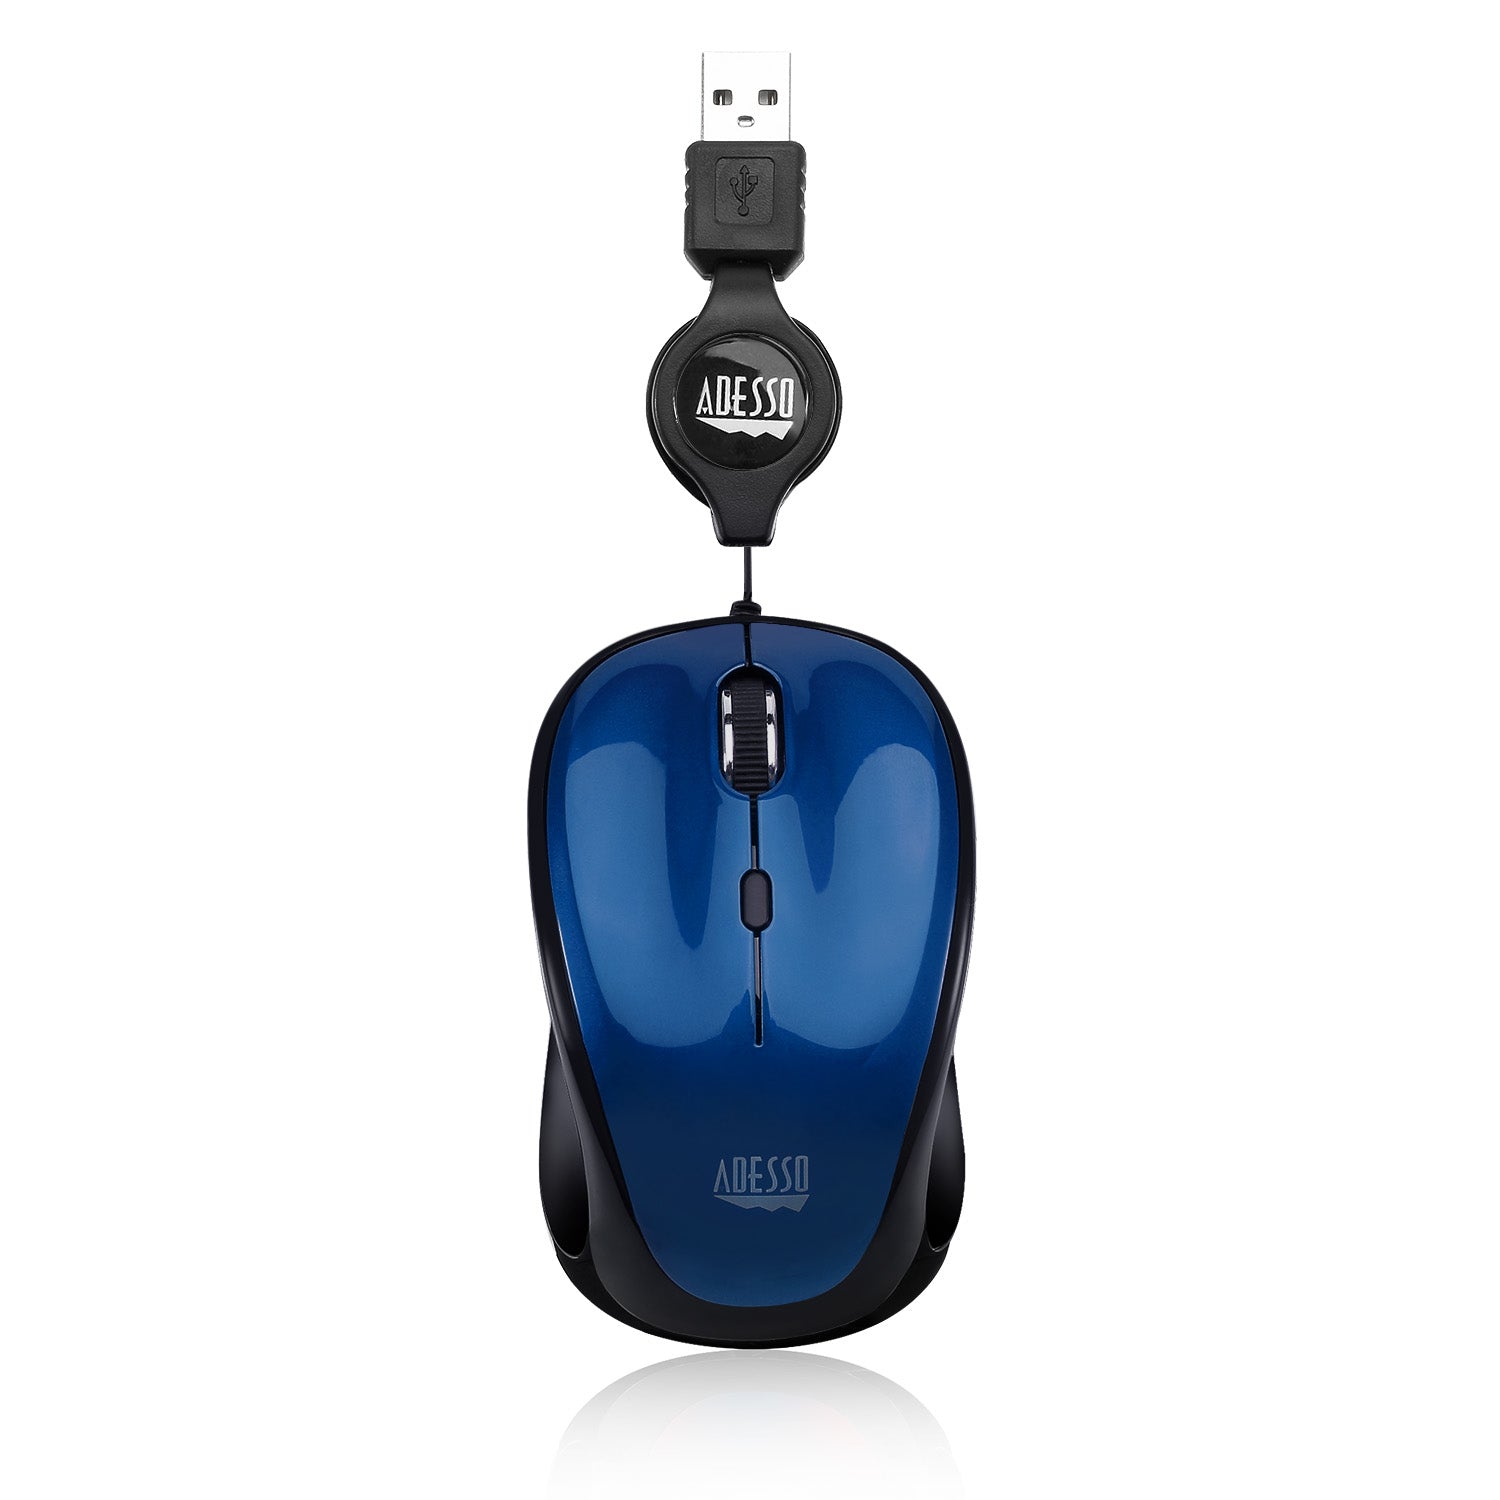 iMouse S8L - USB Illuminated Retractable Mini Mouse